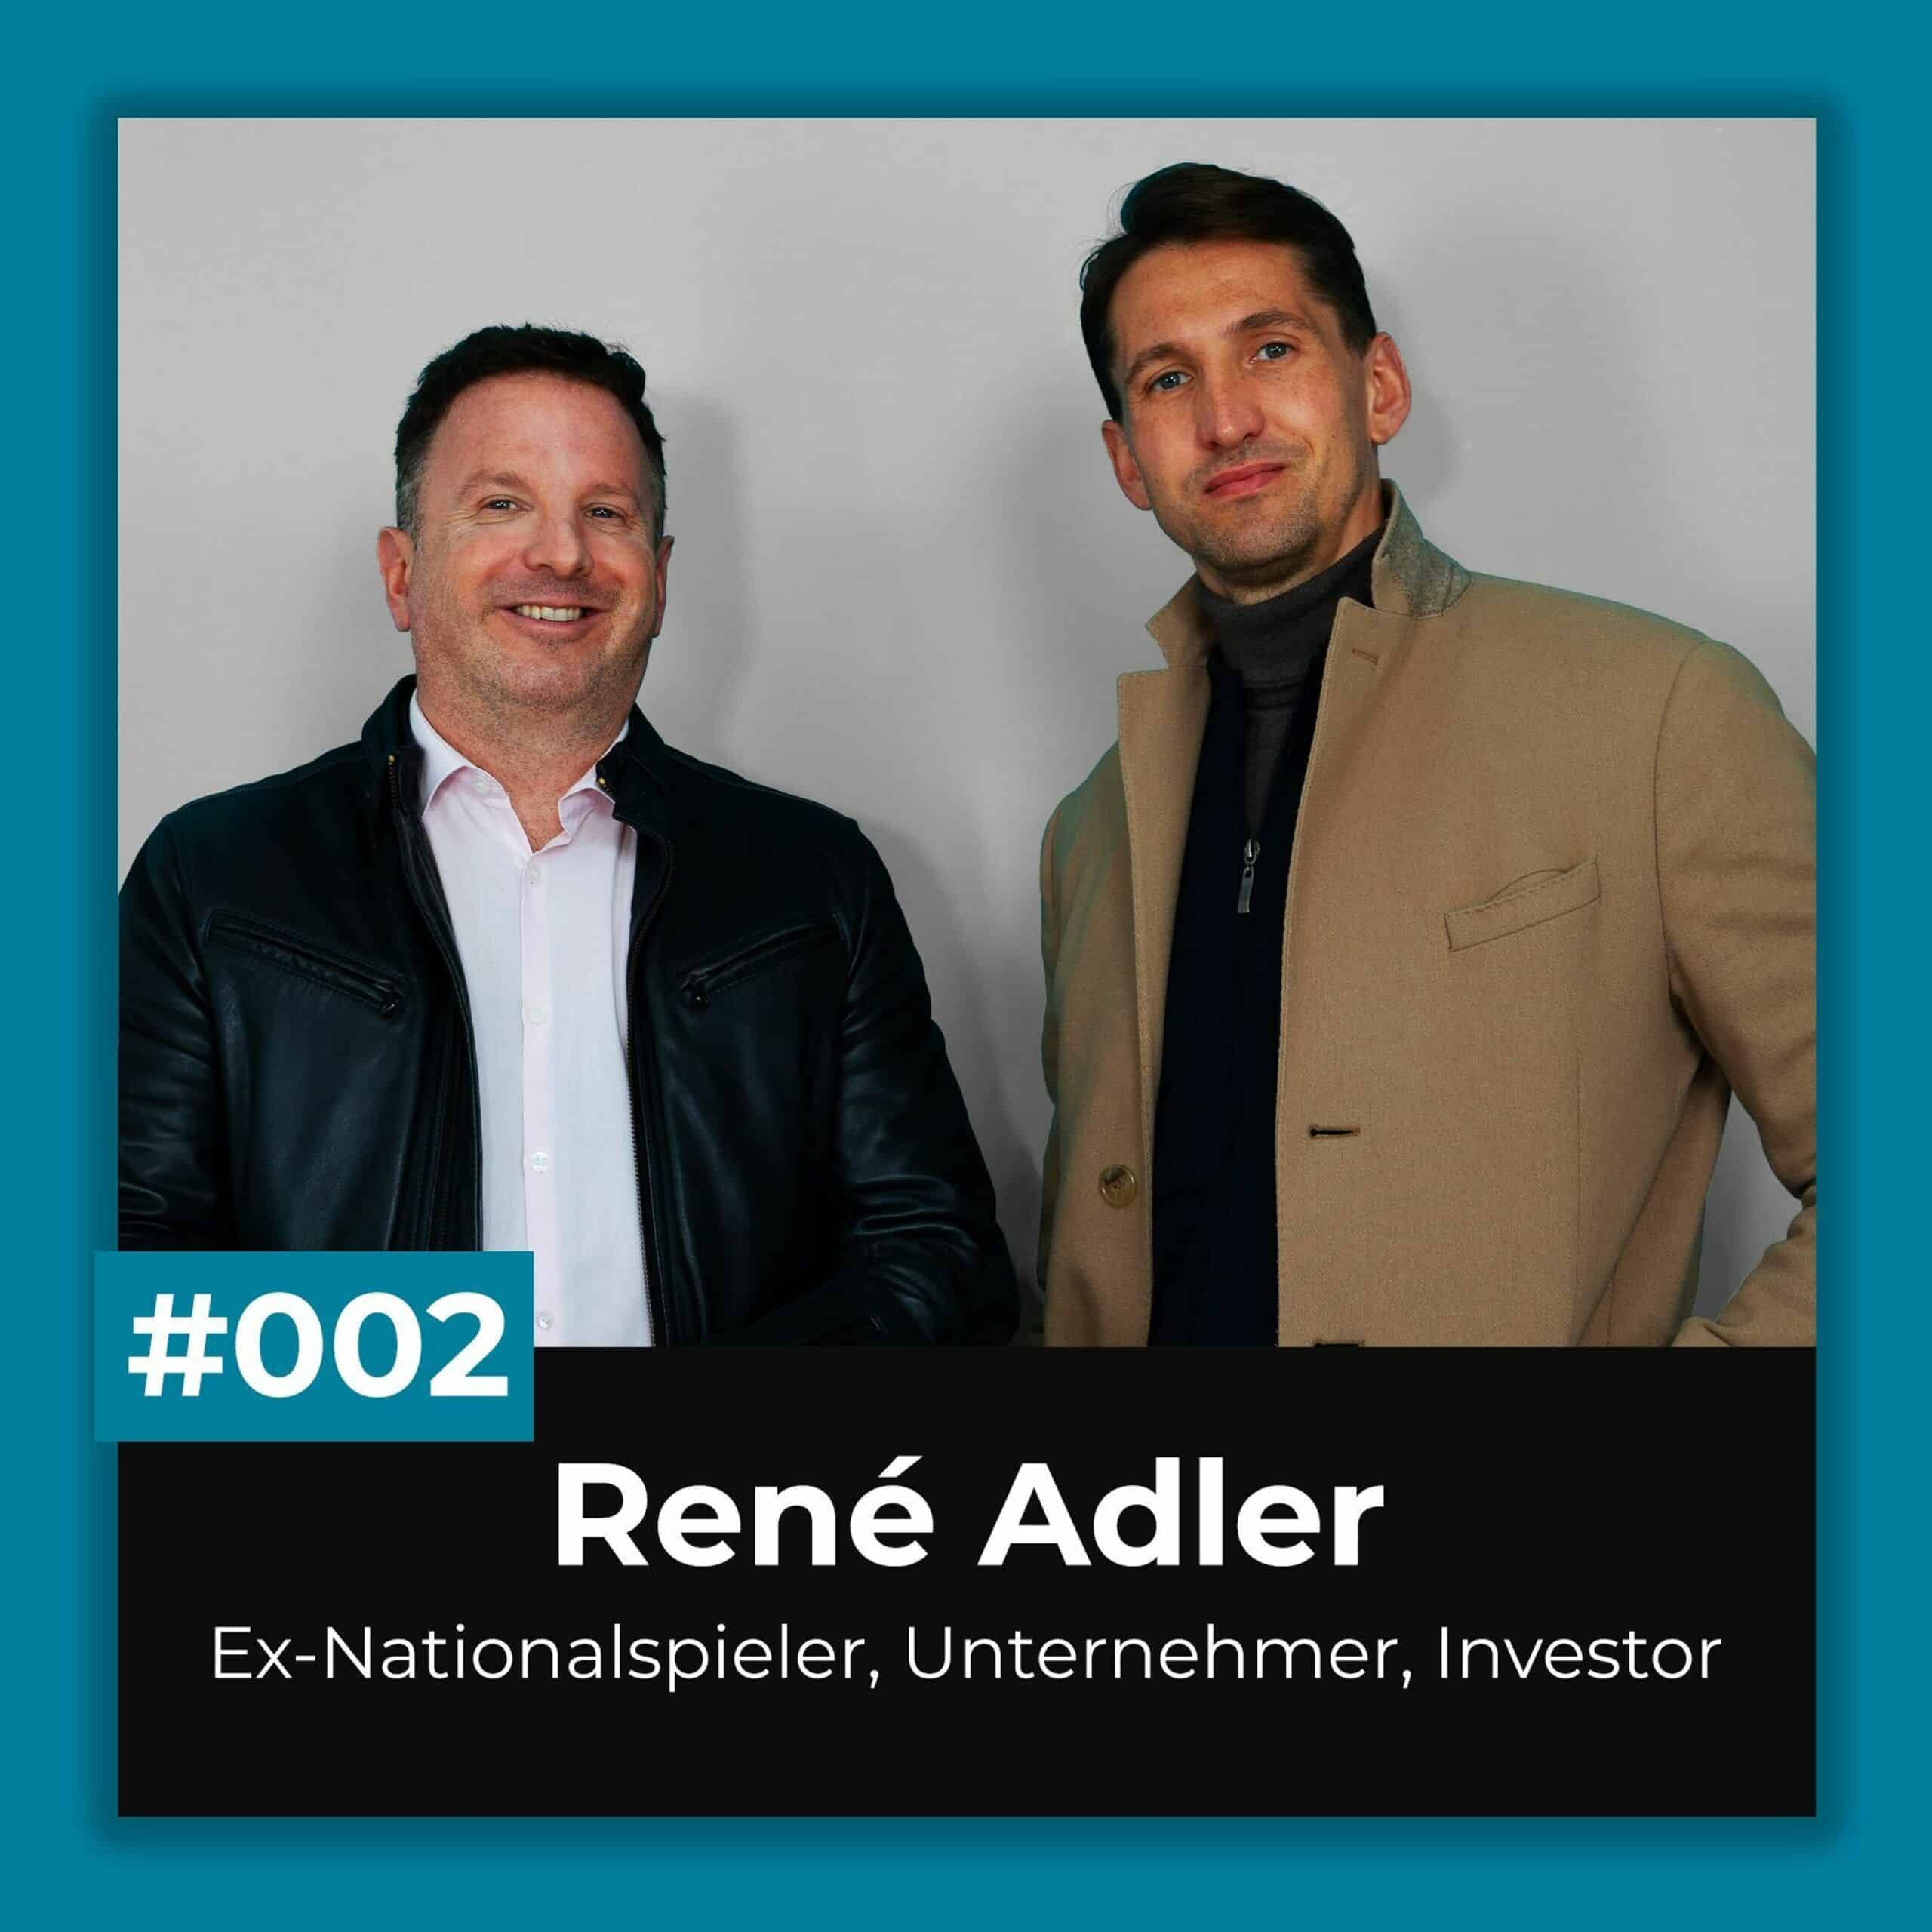 #002 - Ex-Profi-Fußballer René Adler als Investor